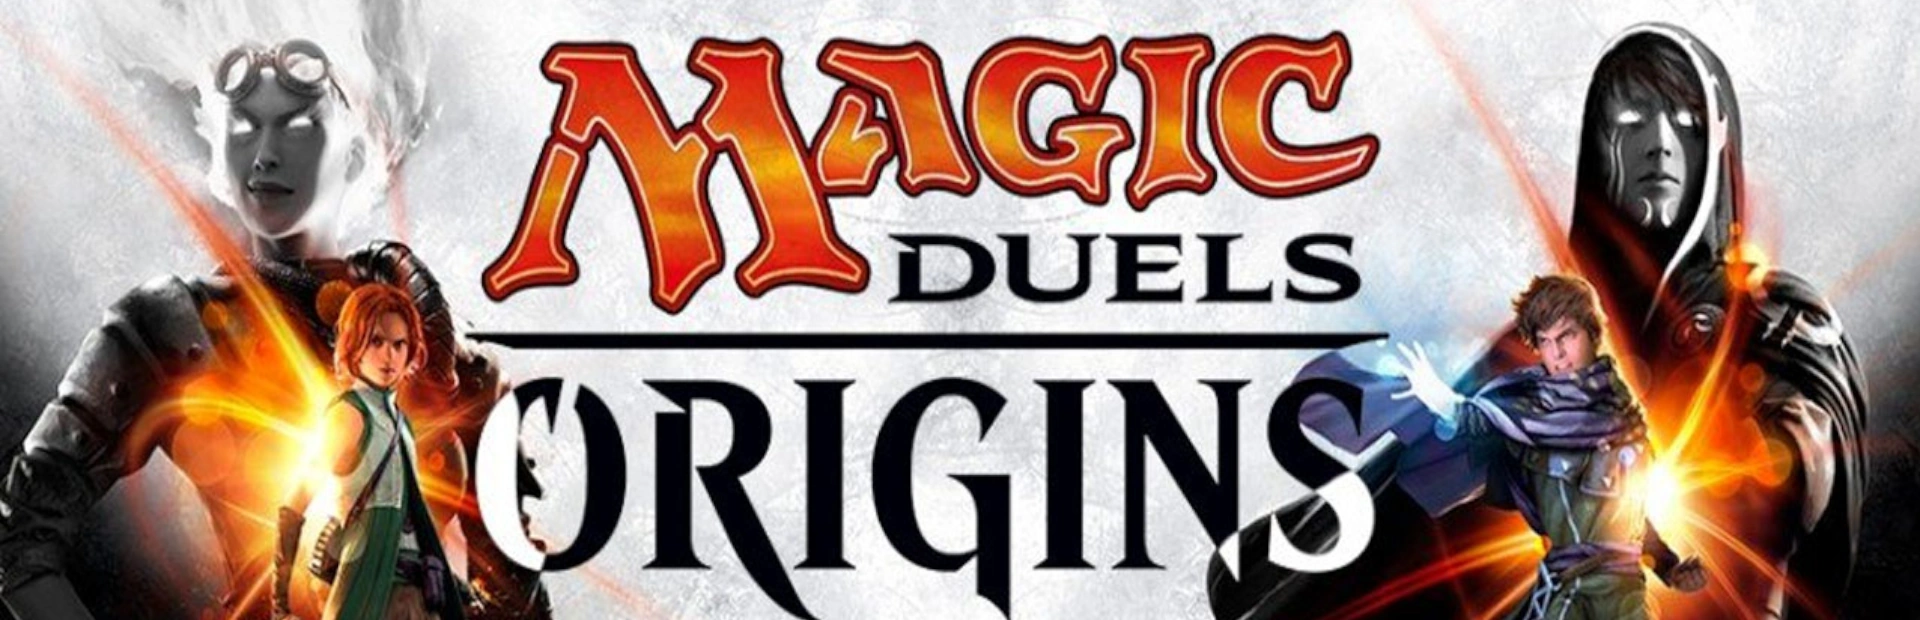 دانلود بازی Magic duels origins برای کامپیوتر | گیمباتو